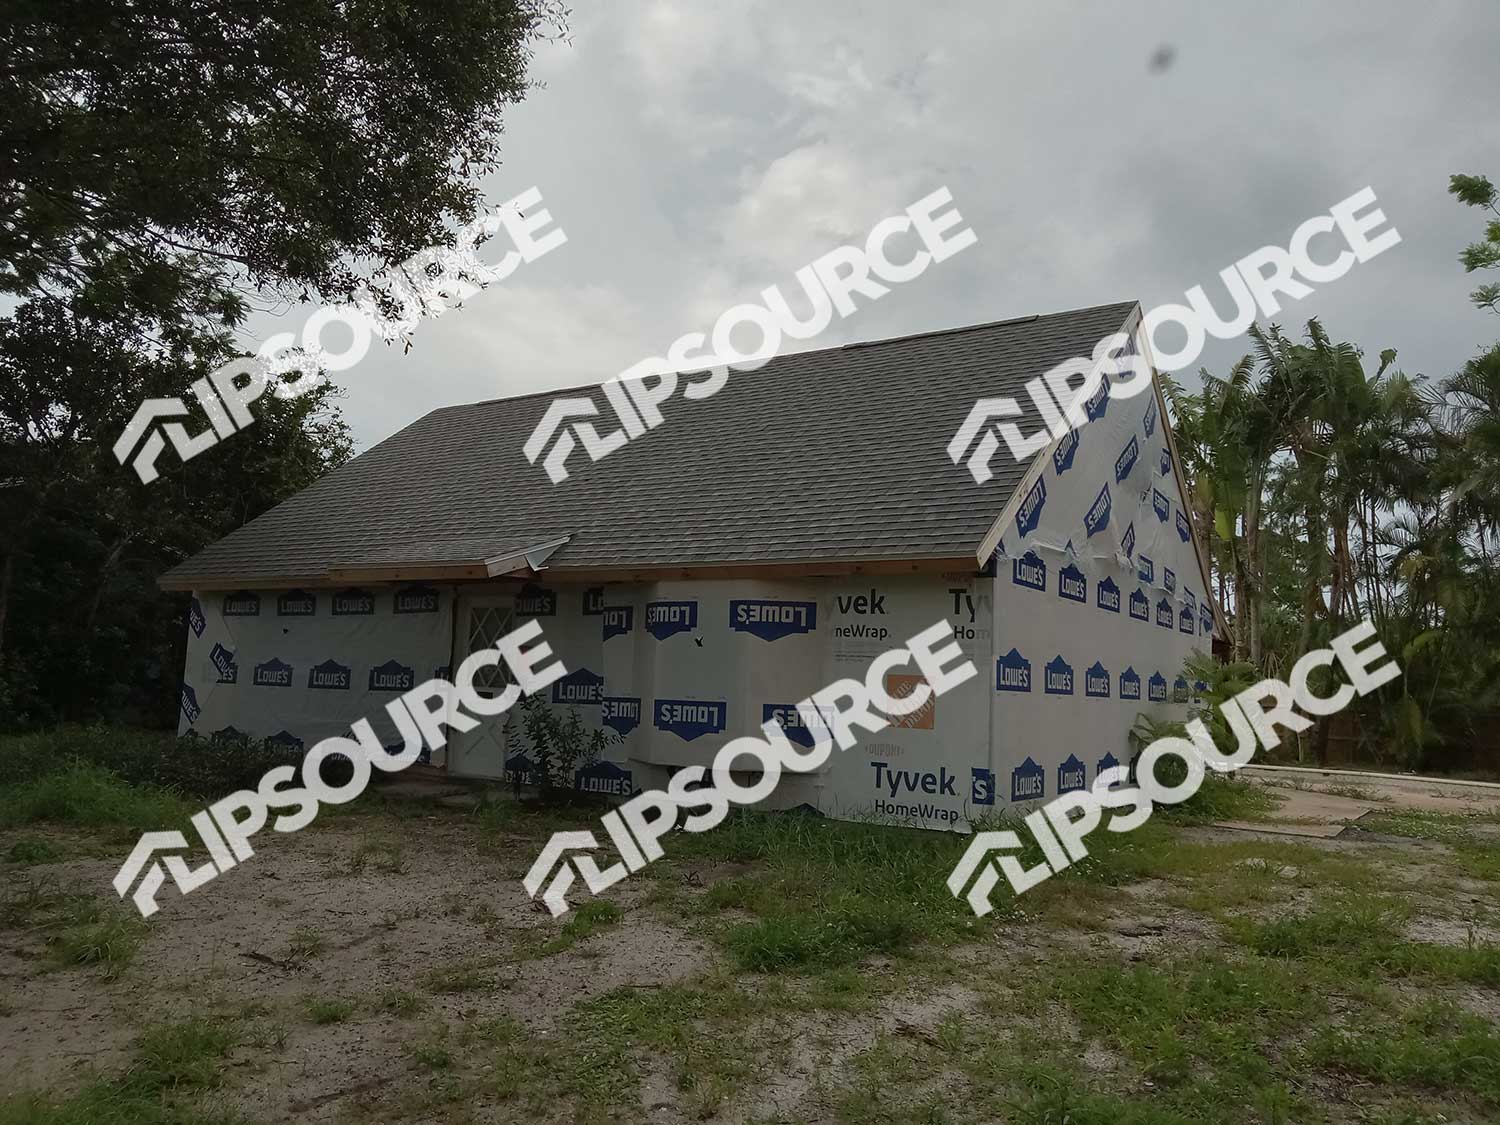 Off-Market Real Estate Deal in Fort Pierce, FL